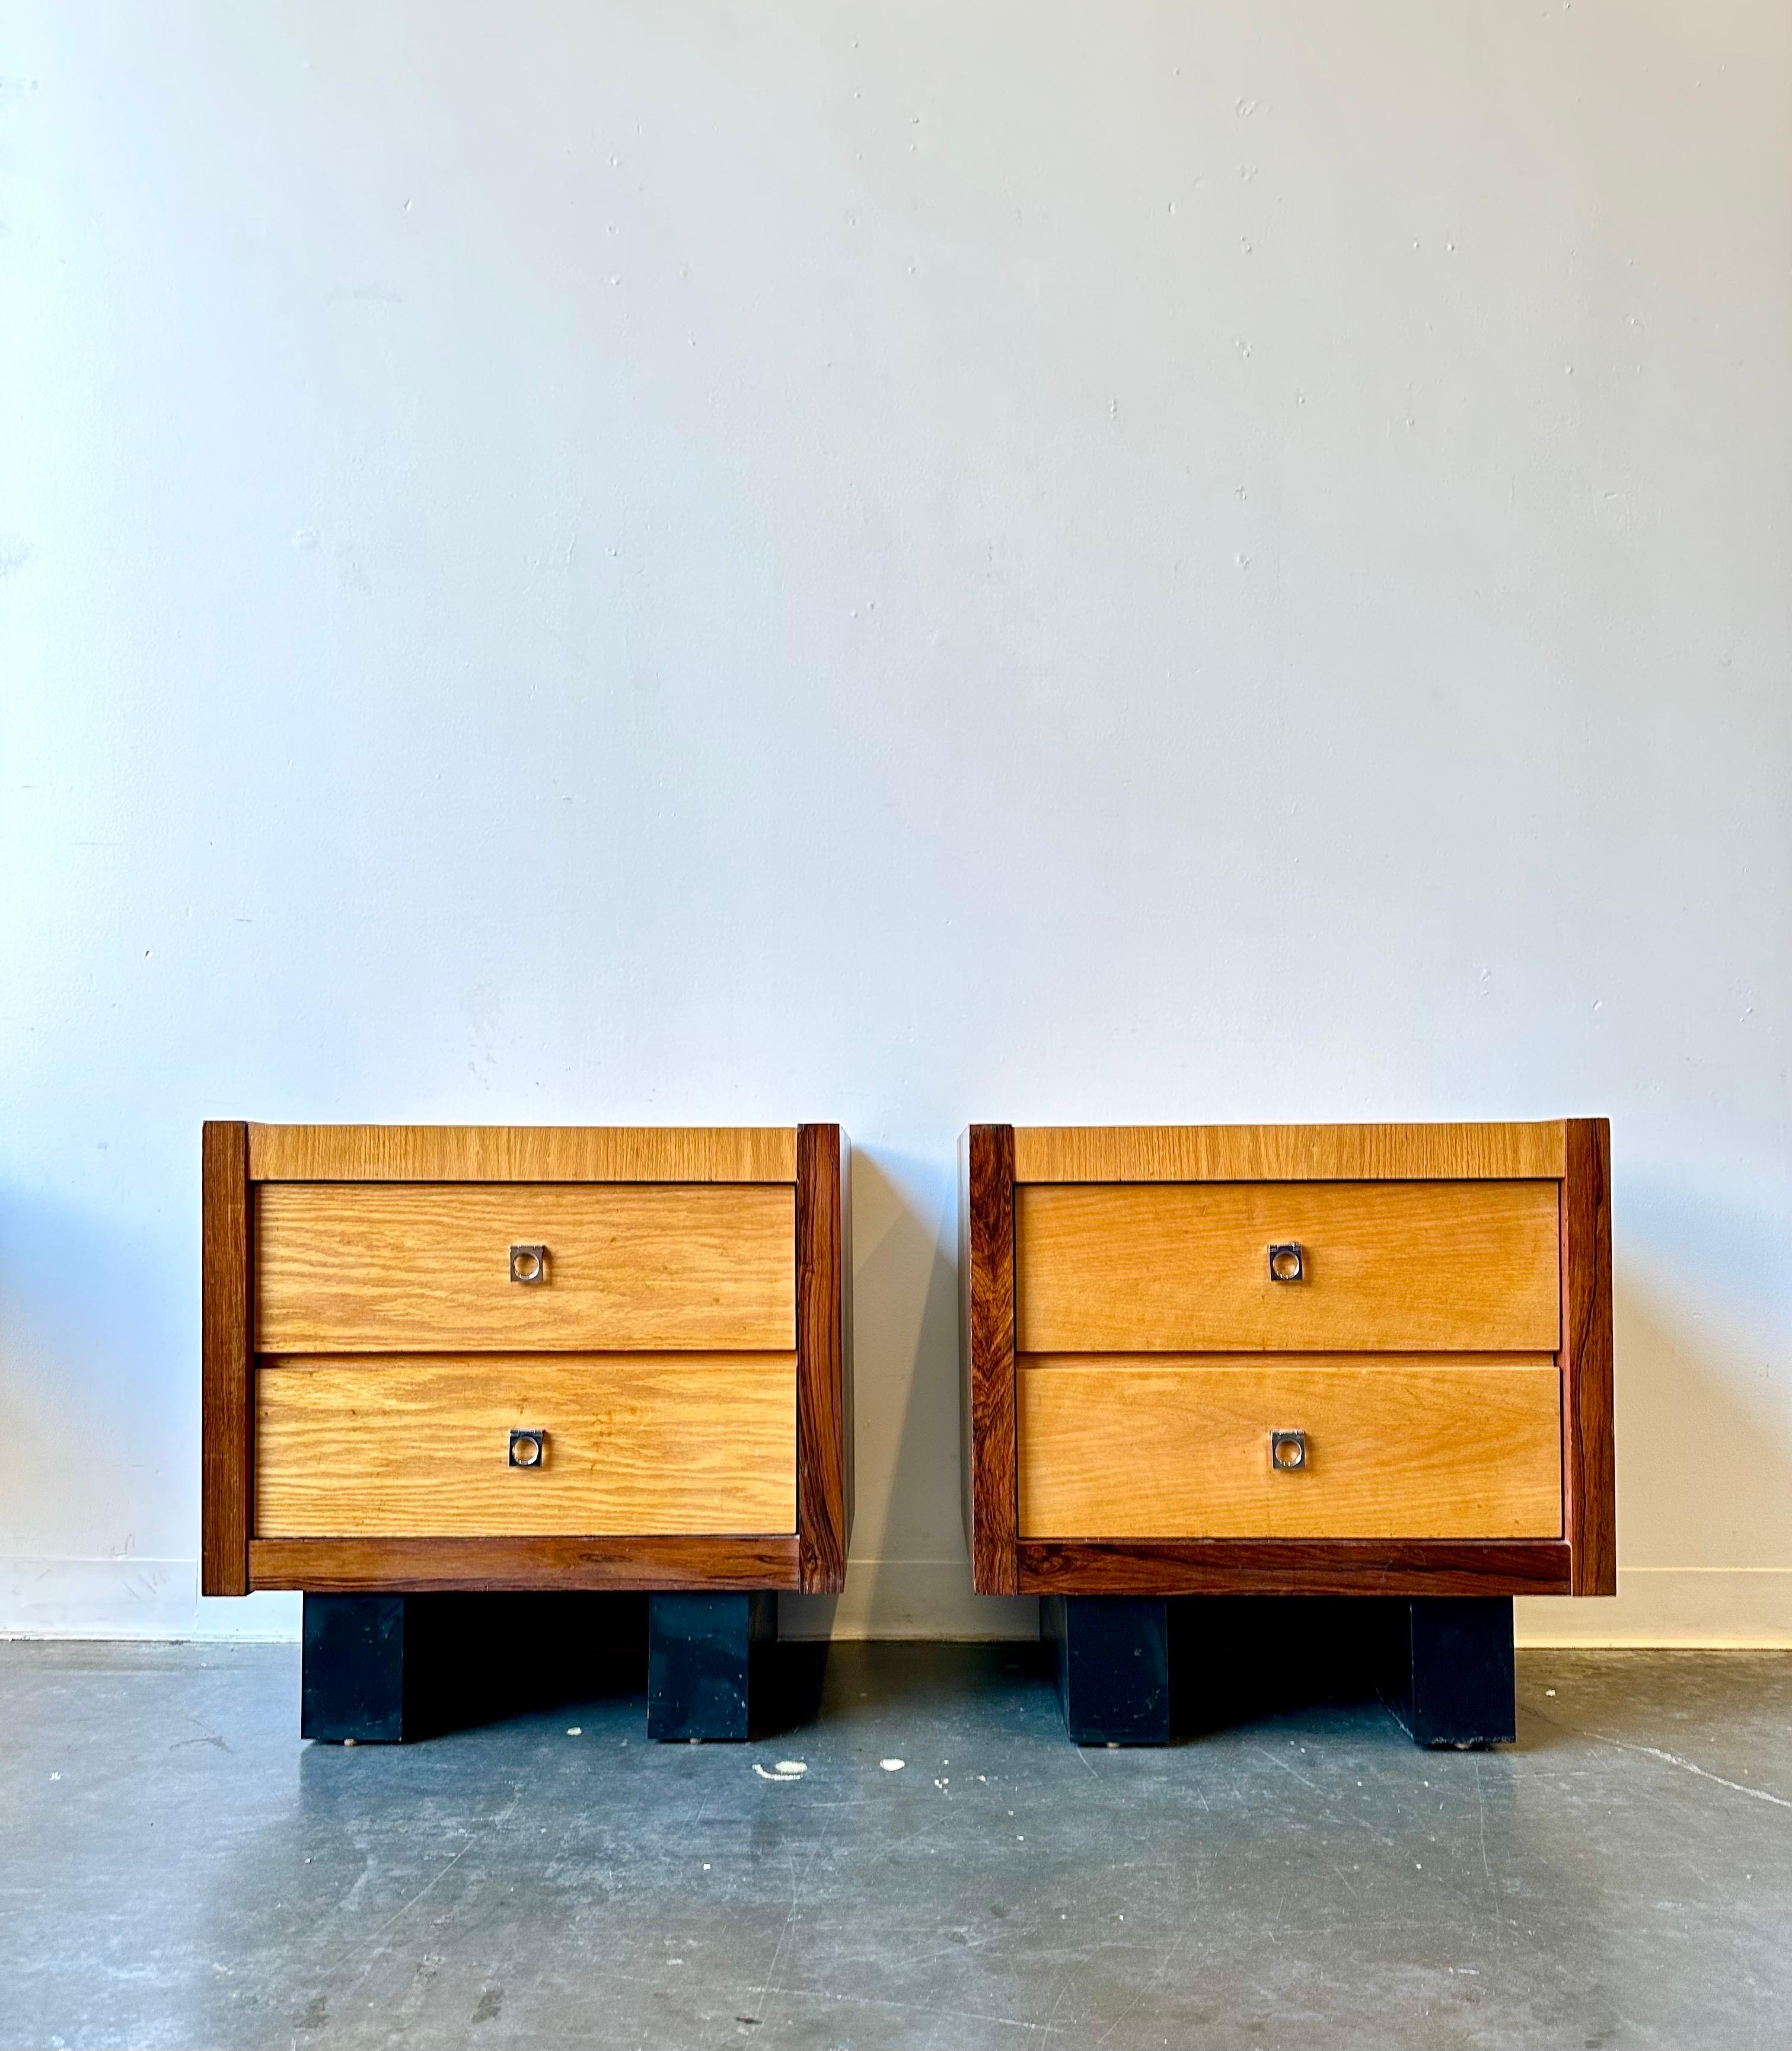 Tables de nuit en bois de rose et en chêne de style brutal.

Magnifique ensemble fabriqué au Canada vers 1970.
Ce duo est dans un état fantastique avec des signes mineurs d'usure.

Dimensions :
25